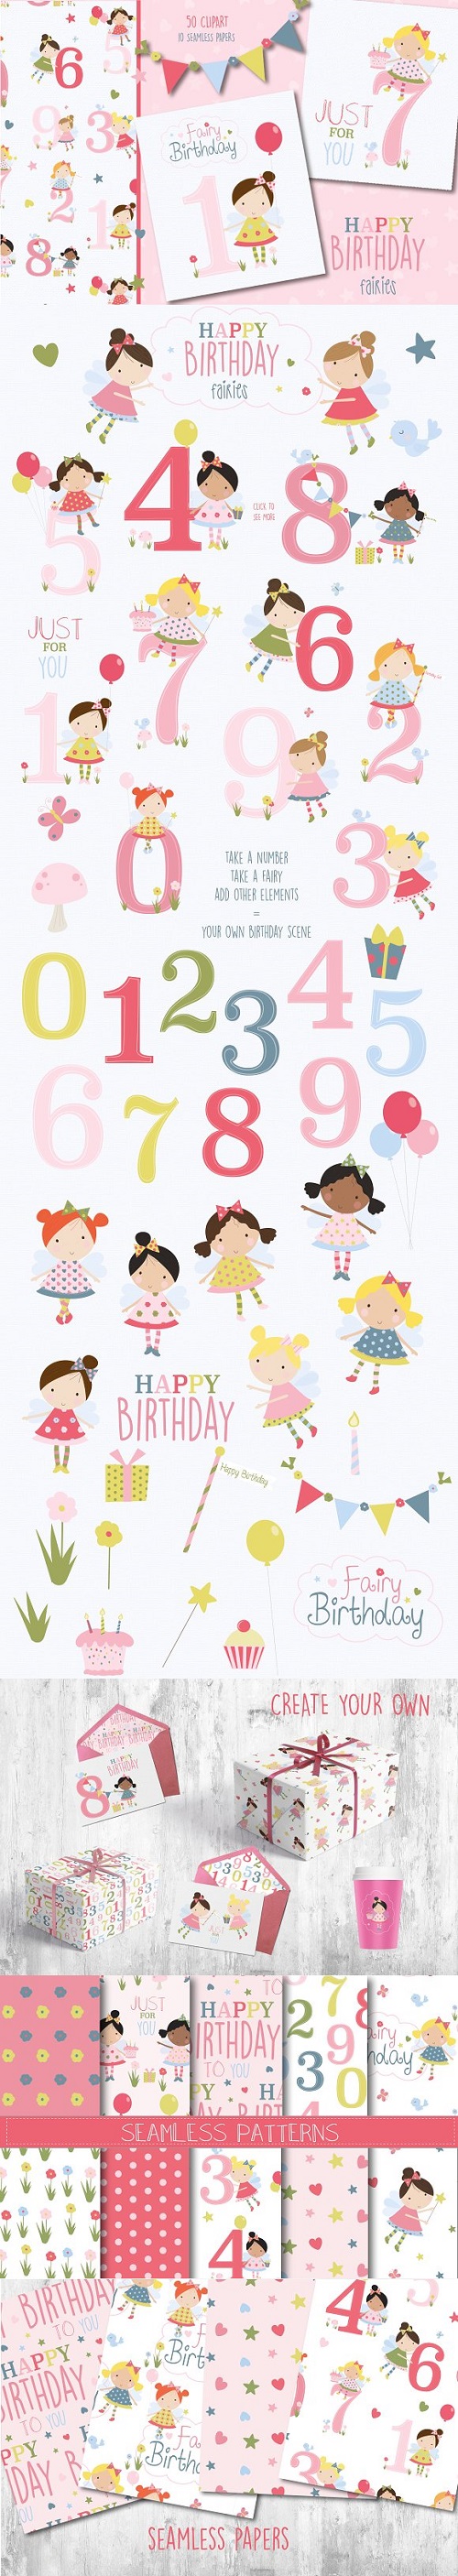 Happy birthday fairies 2209326